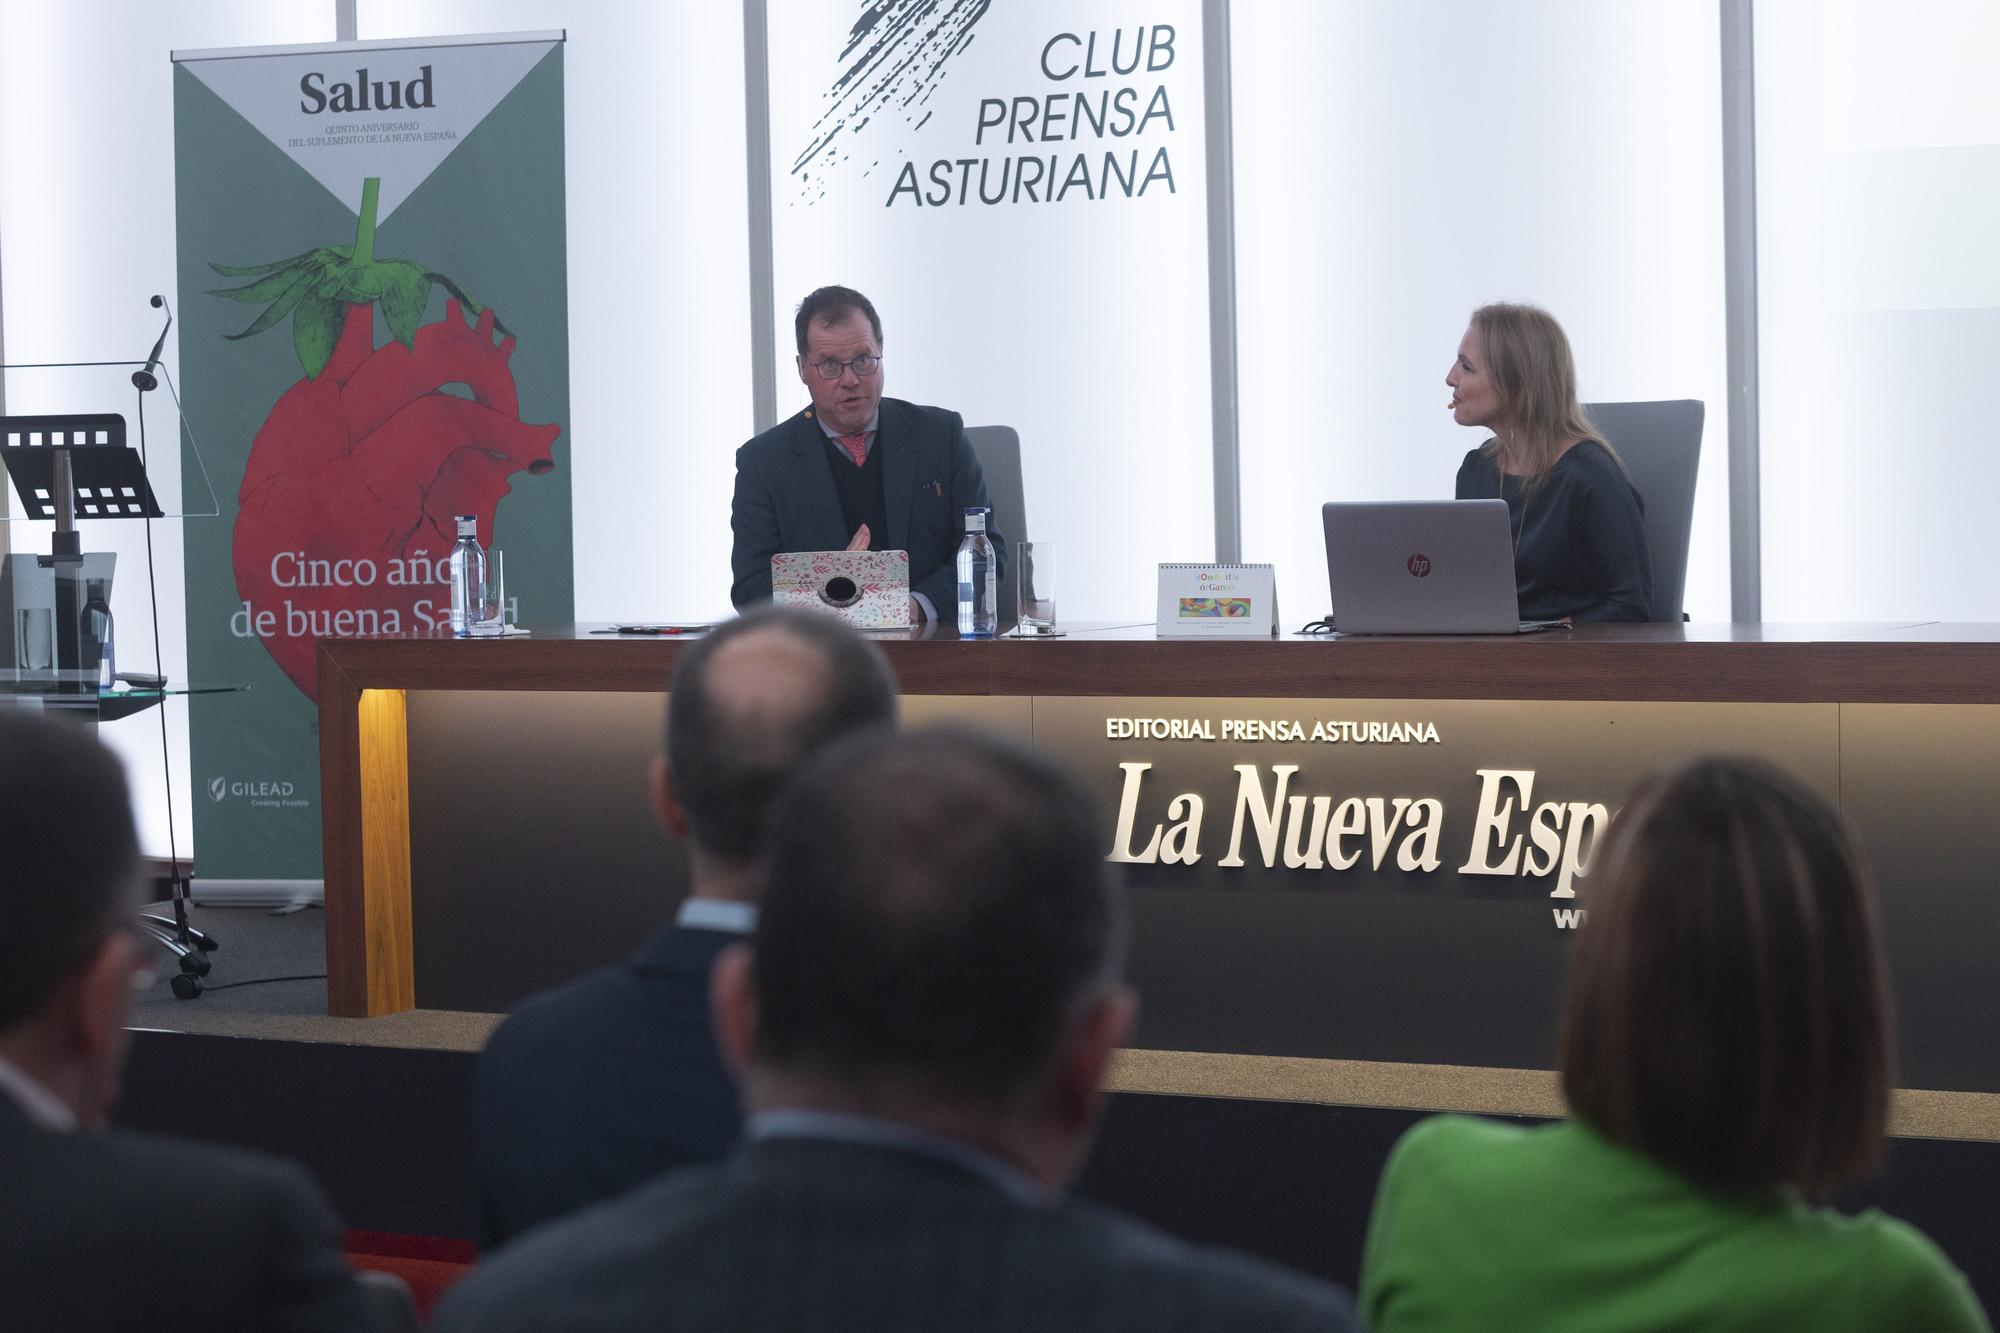 Quinto aniversario del Suplemento "Salud" de LA NUEVA ESPAÑA: acto en el Club Prensa